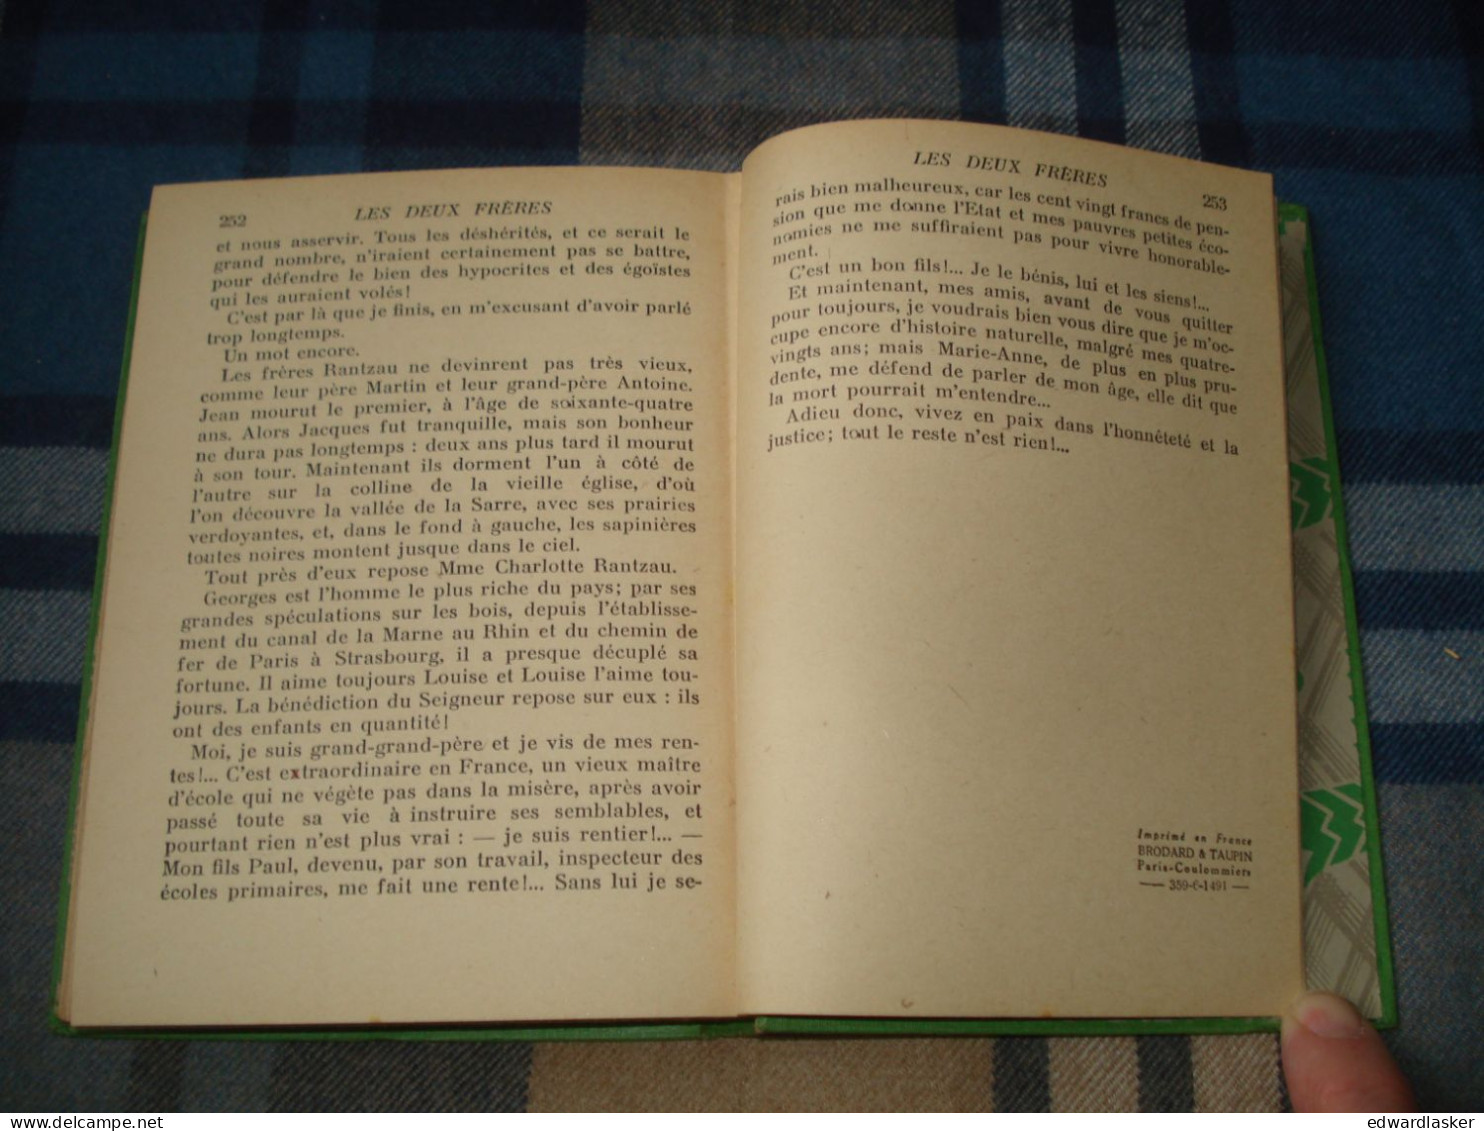 BIBLIOTHEQUE VERTE : Les Deux Frères (Les Rantzau) /Erckmann-Chatrian - 1941 - Bibliothèque Verte